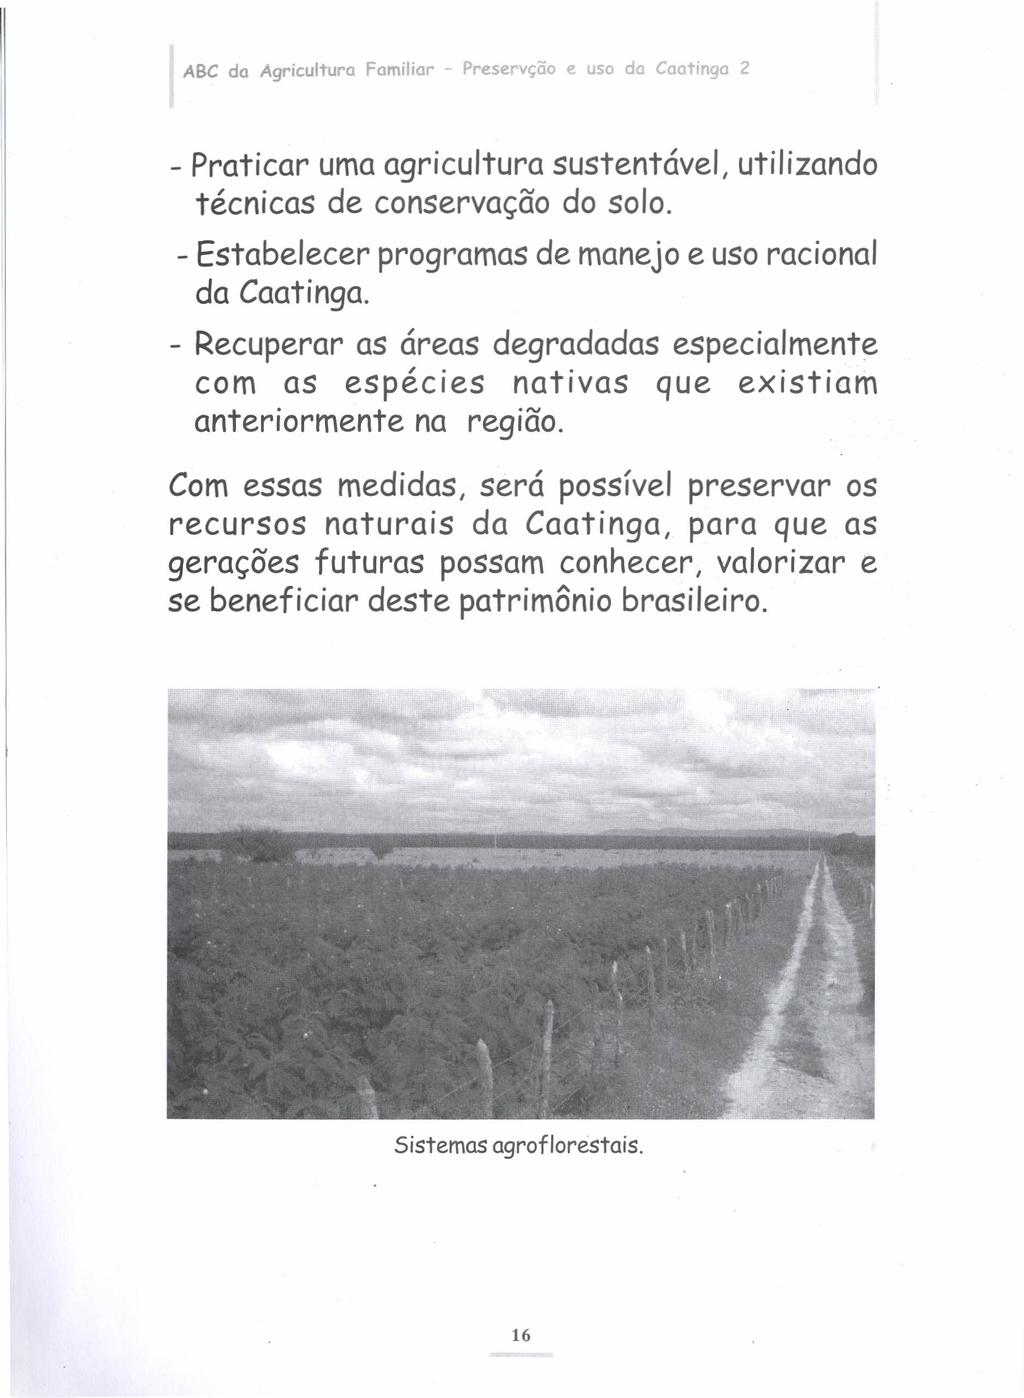 ABC da Agricultura Familiar - Preservção e uso da Caatinga 2 - Praticar umaagricultura sustentável, utilizando técnicas de conservação do solo.